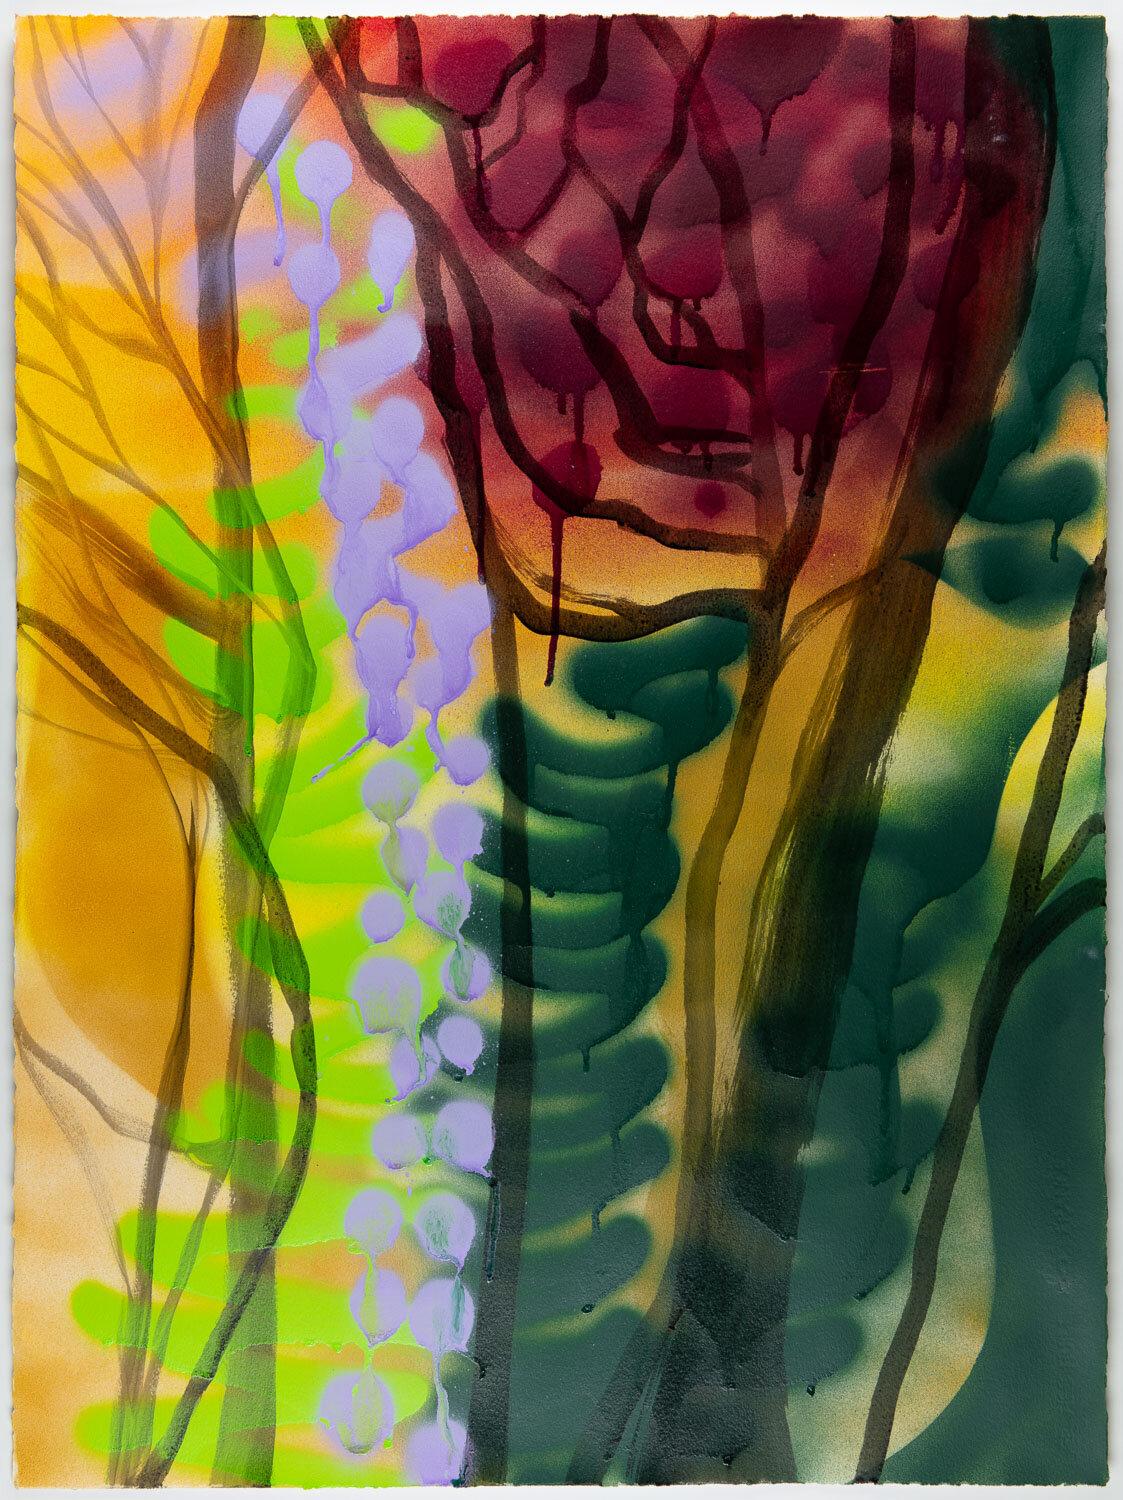 Landscape Painting Rachelle Krieger - « In the Brambles », peinture de paysage abstrait multicolore, arbres dans la forêt